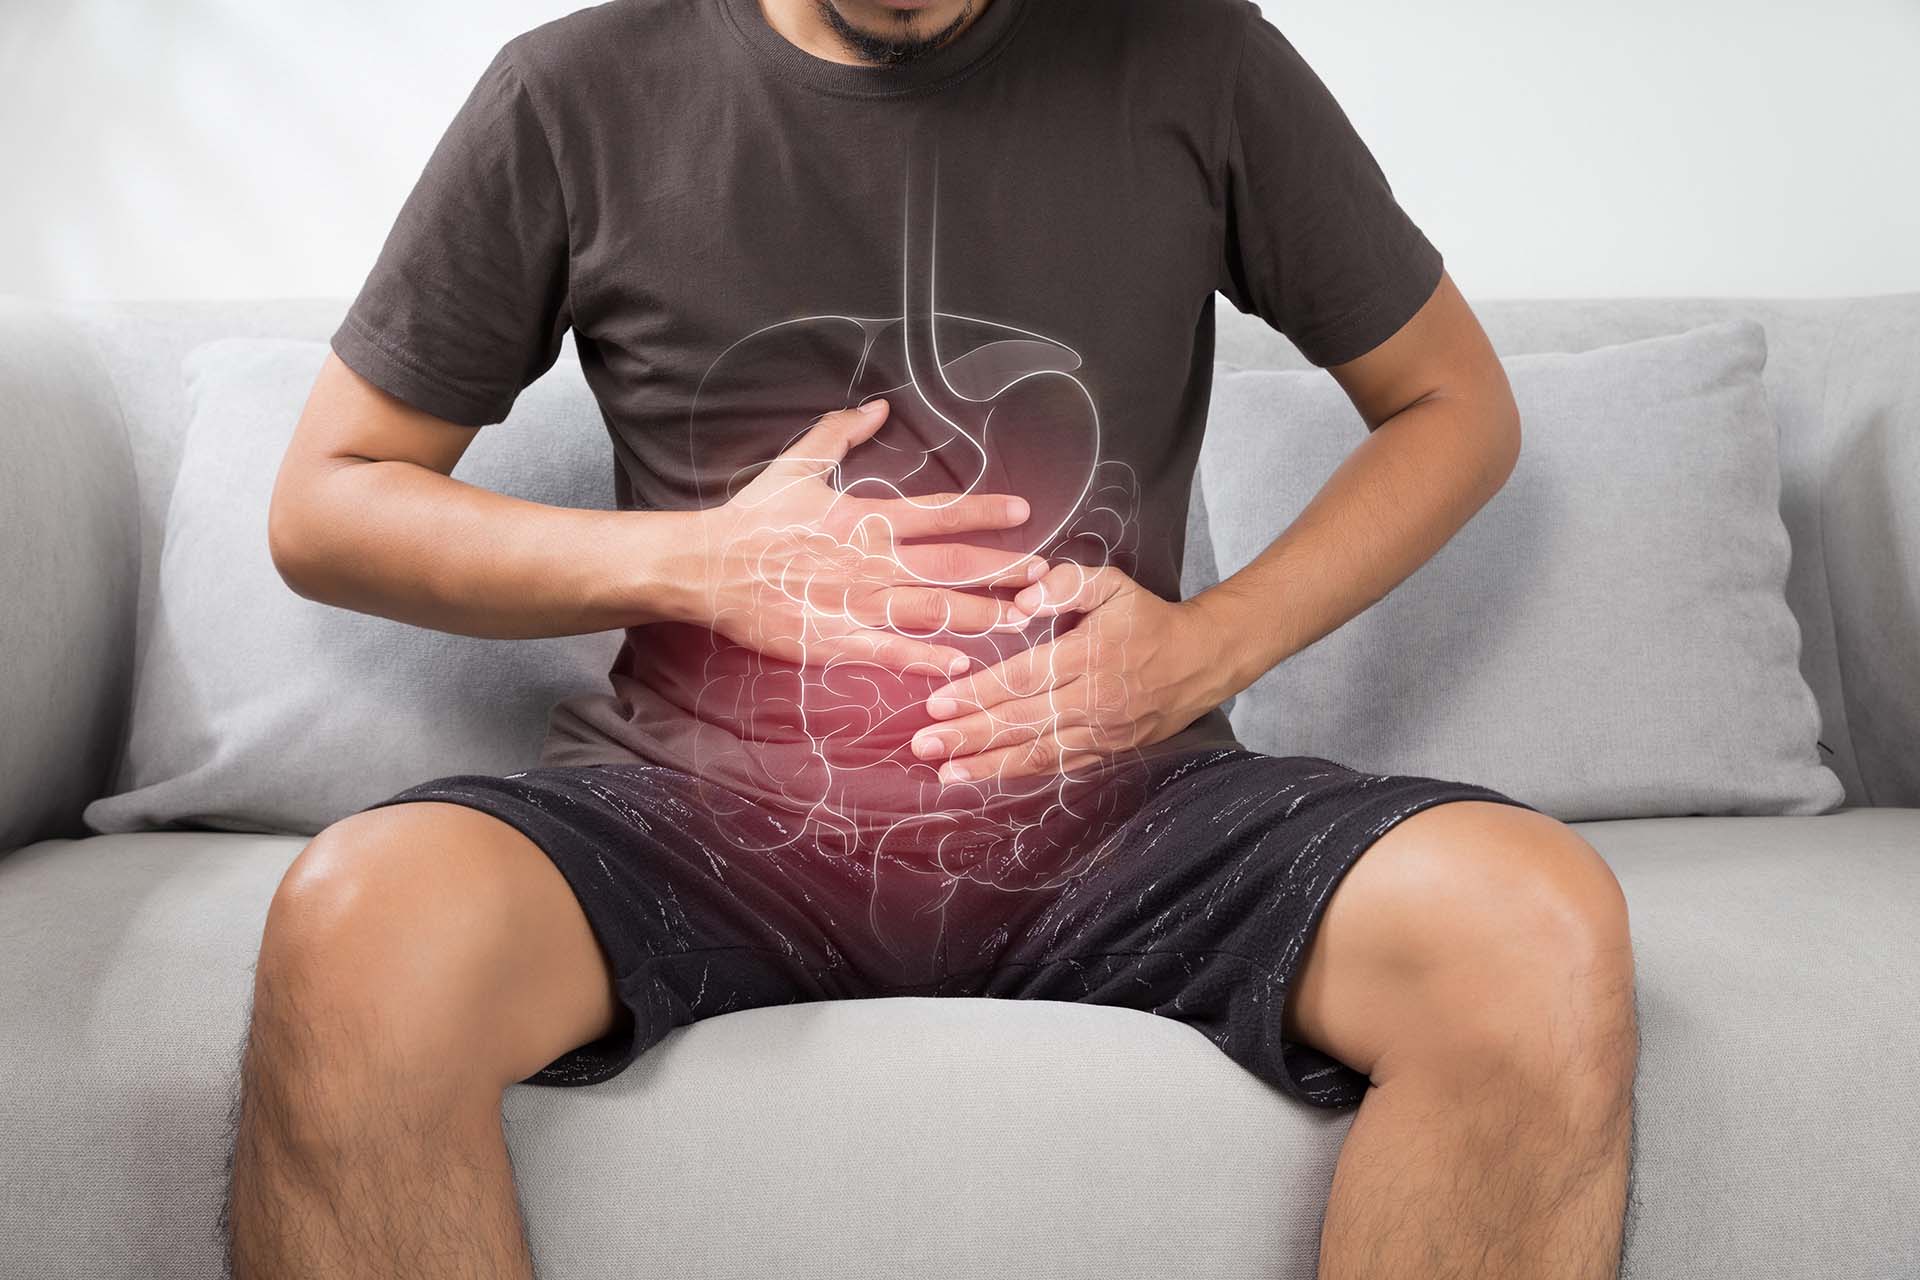 Scopri i sintomi più comuni riconducibili alla sindrome dell’intestino irritabile